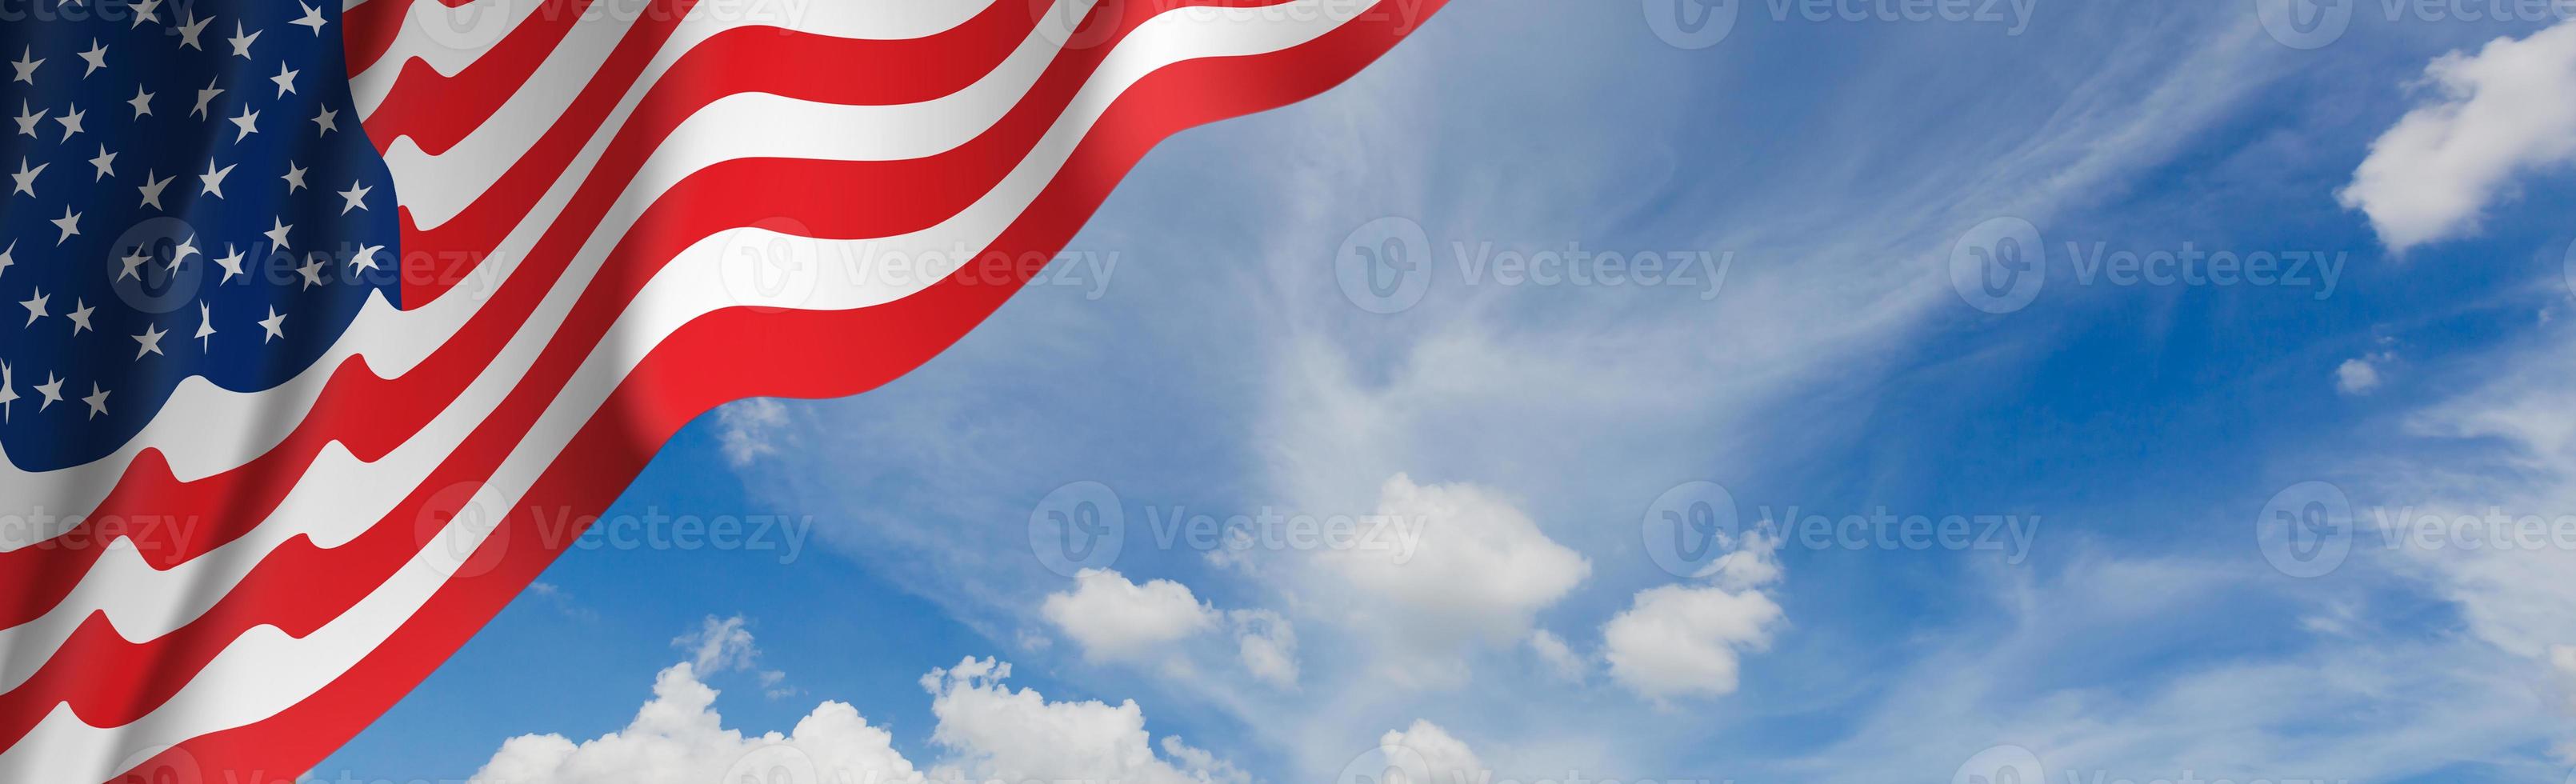 oss amerikanska flaggan foto